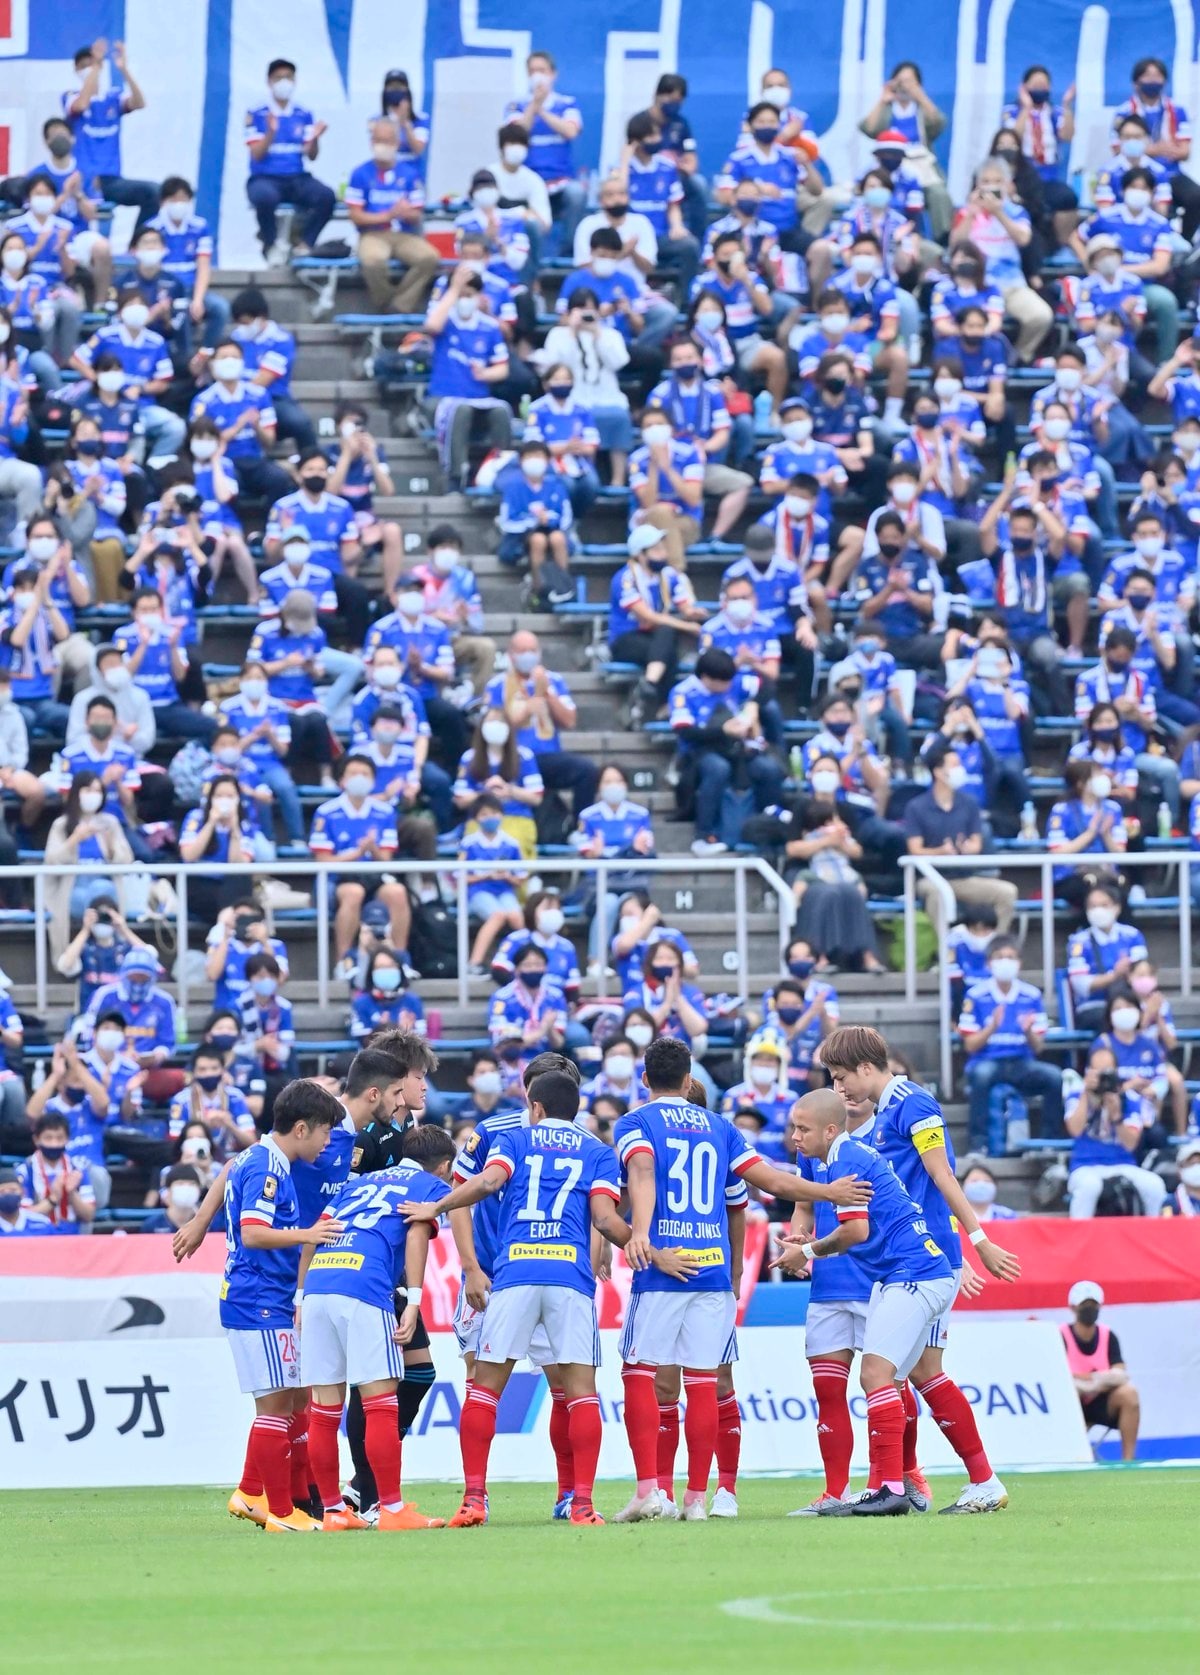 Aclに挑む 横浜fm Fc東京 神戸 の勝算 1 決勝までの8試合 サッカー批評web